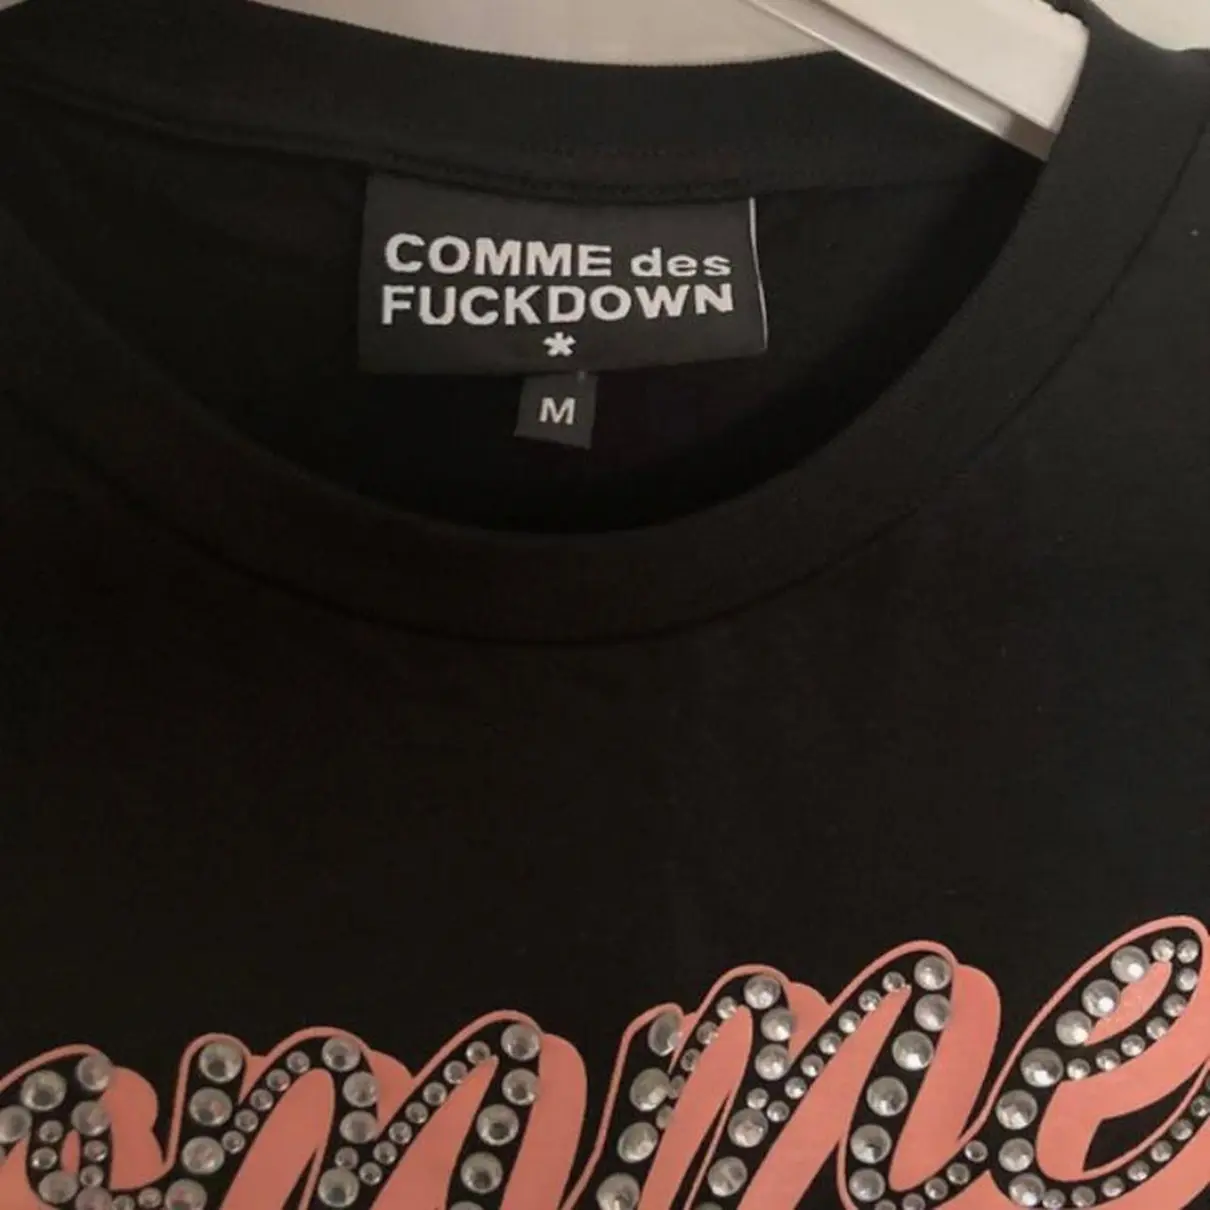 Buy Comme des fuckdown T-shirt online